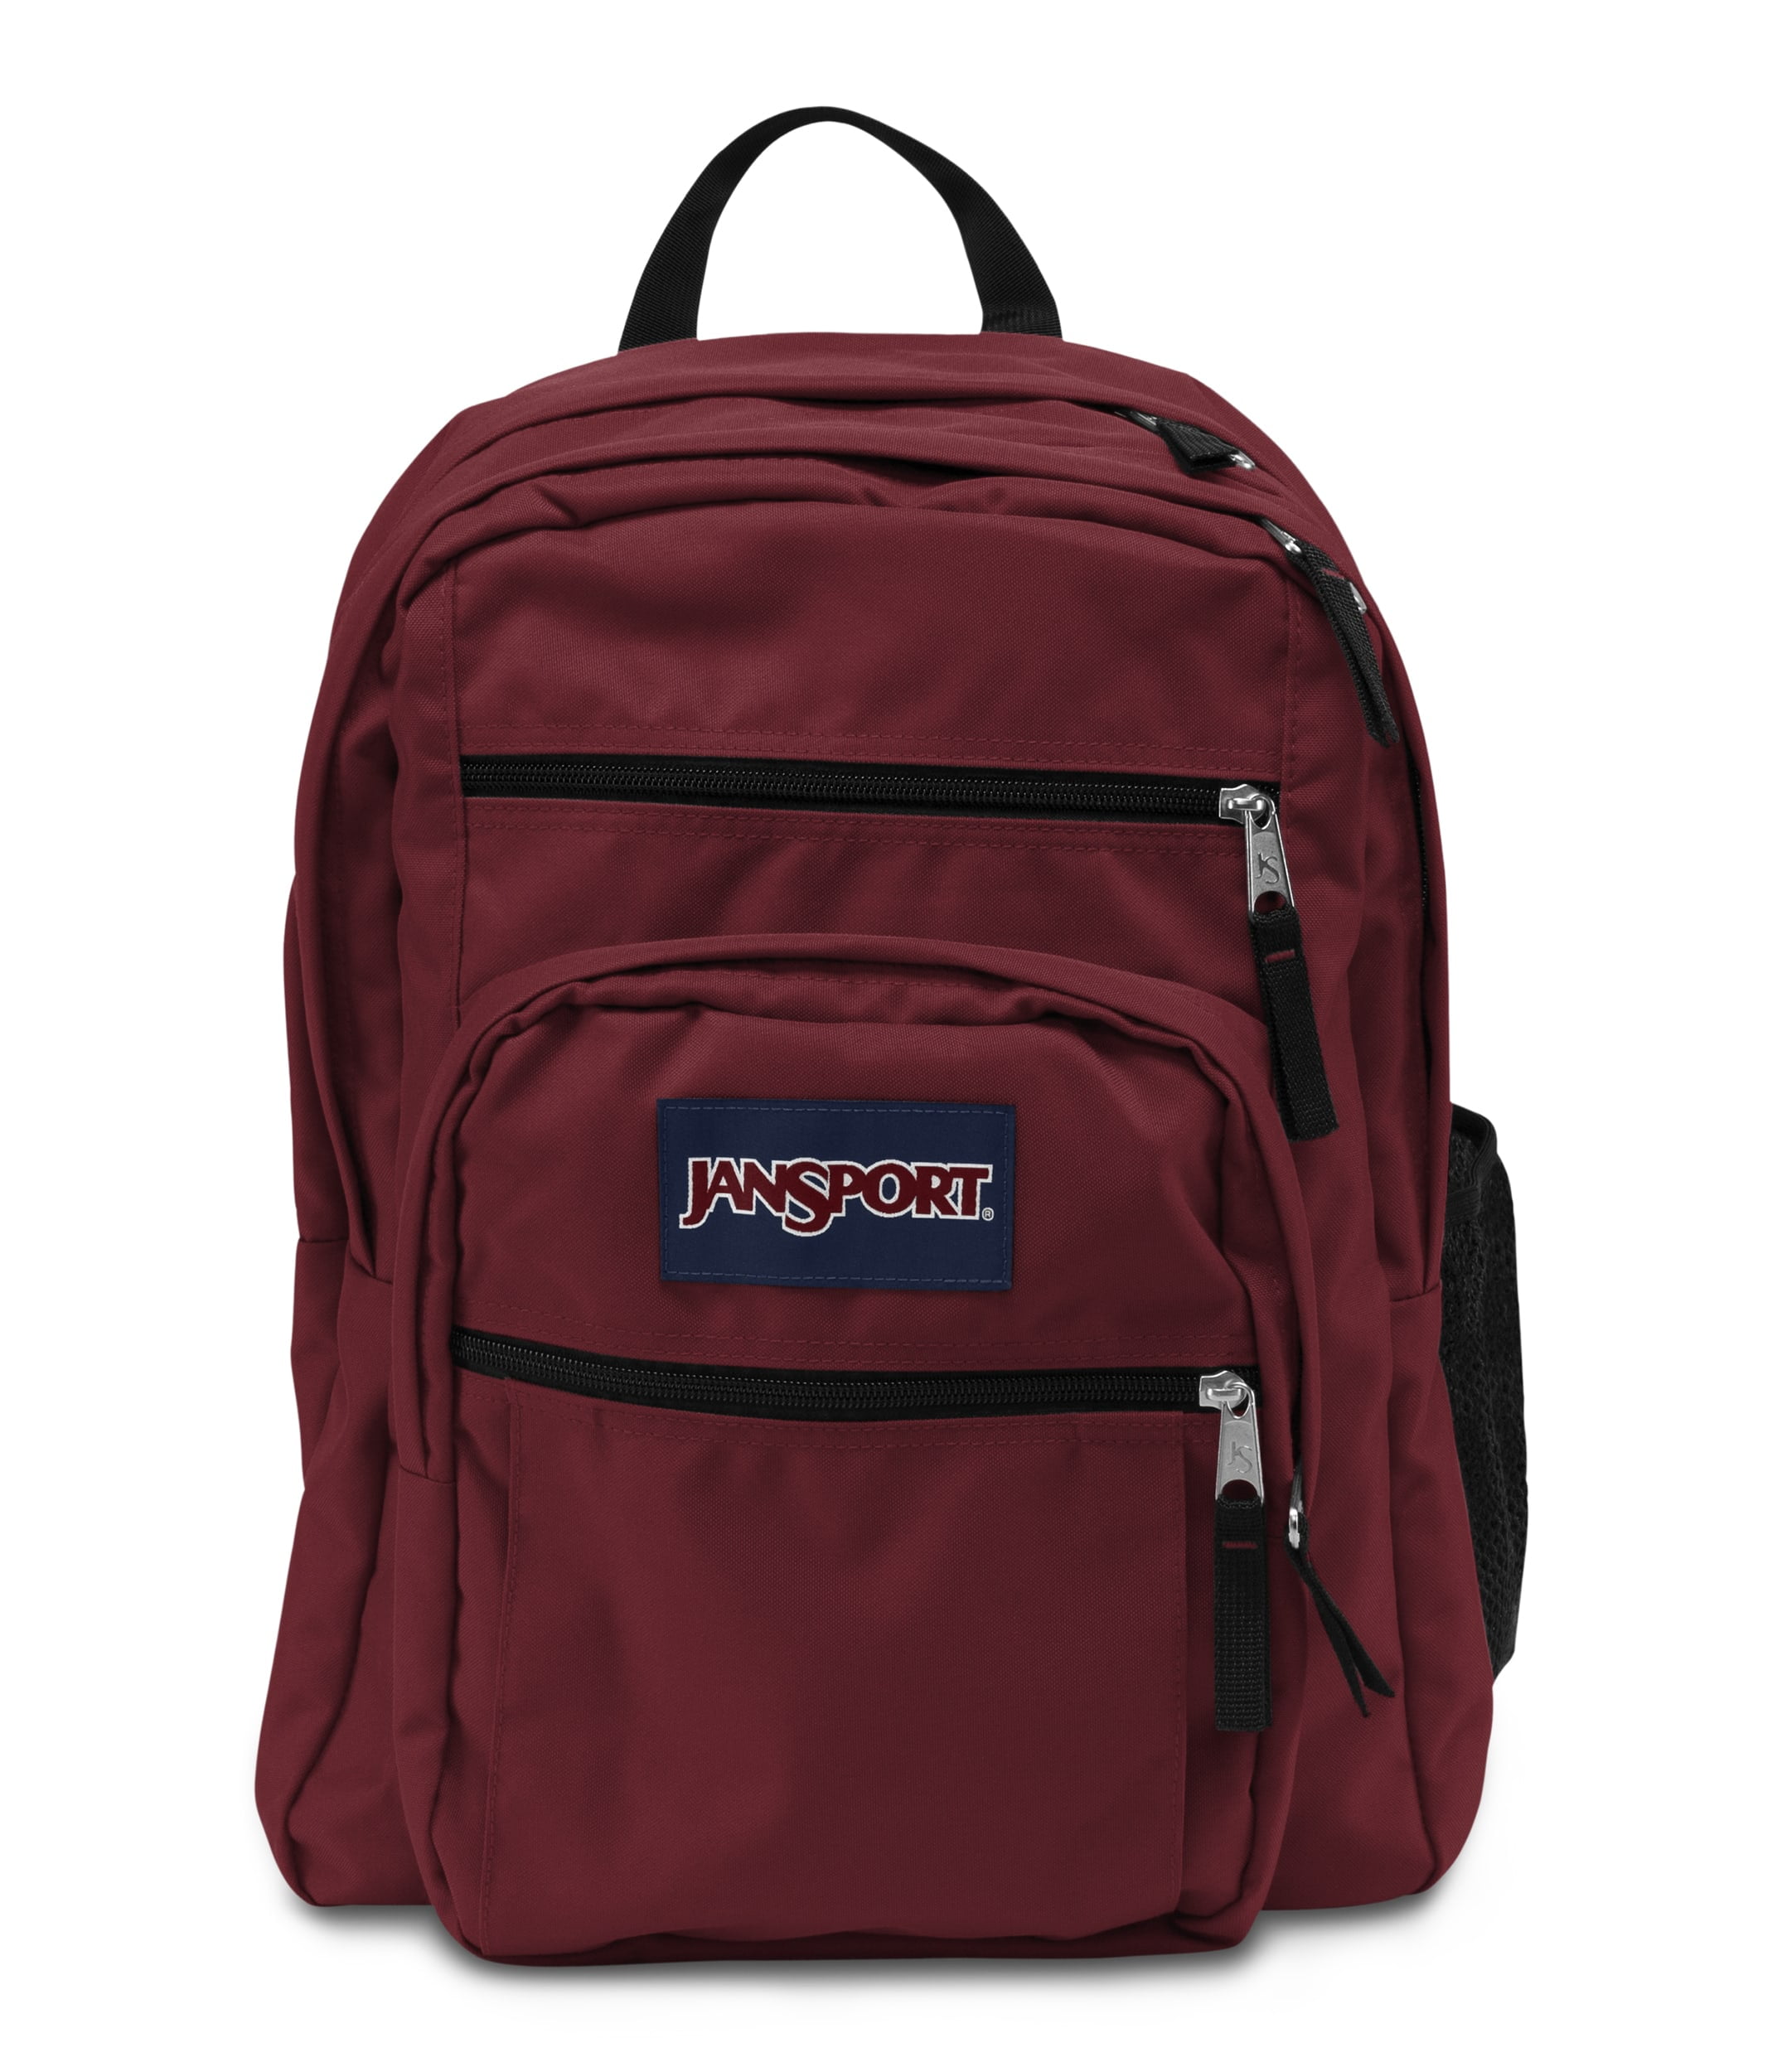 JanSport Big Student Backpack, Viking Red - Walmart.com